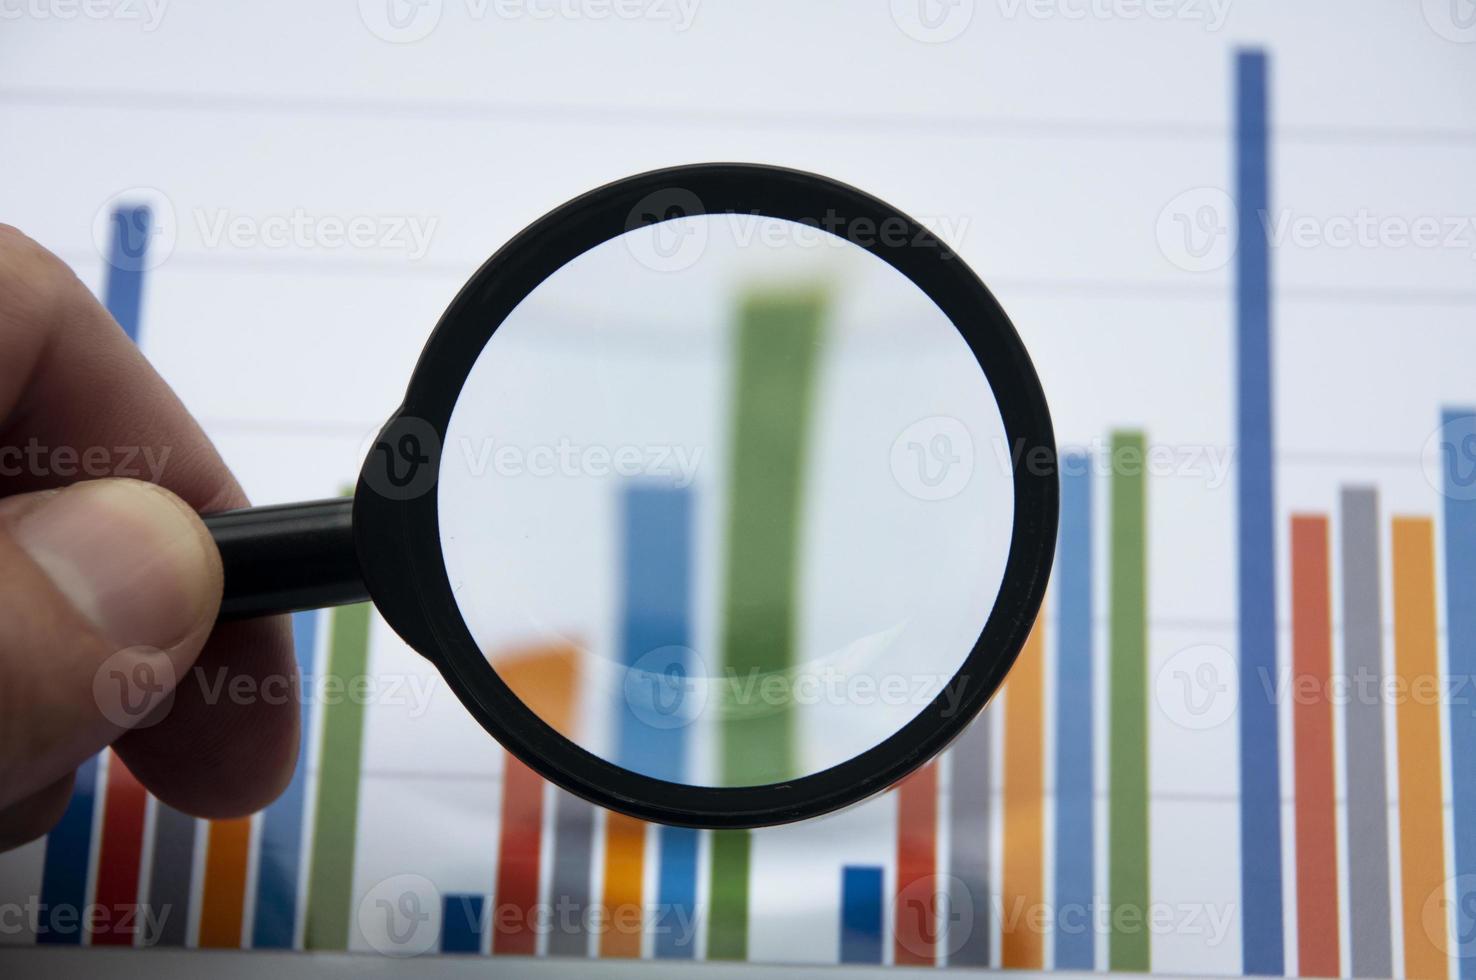 analyse van gegevens, grafiek en grafieken met behulp van vergrootglas. bedrijfsfinanciën concept foto